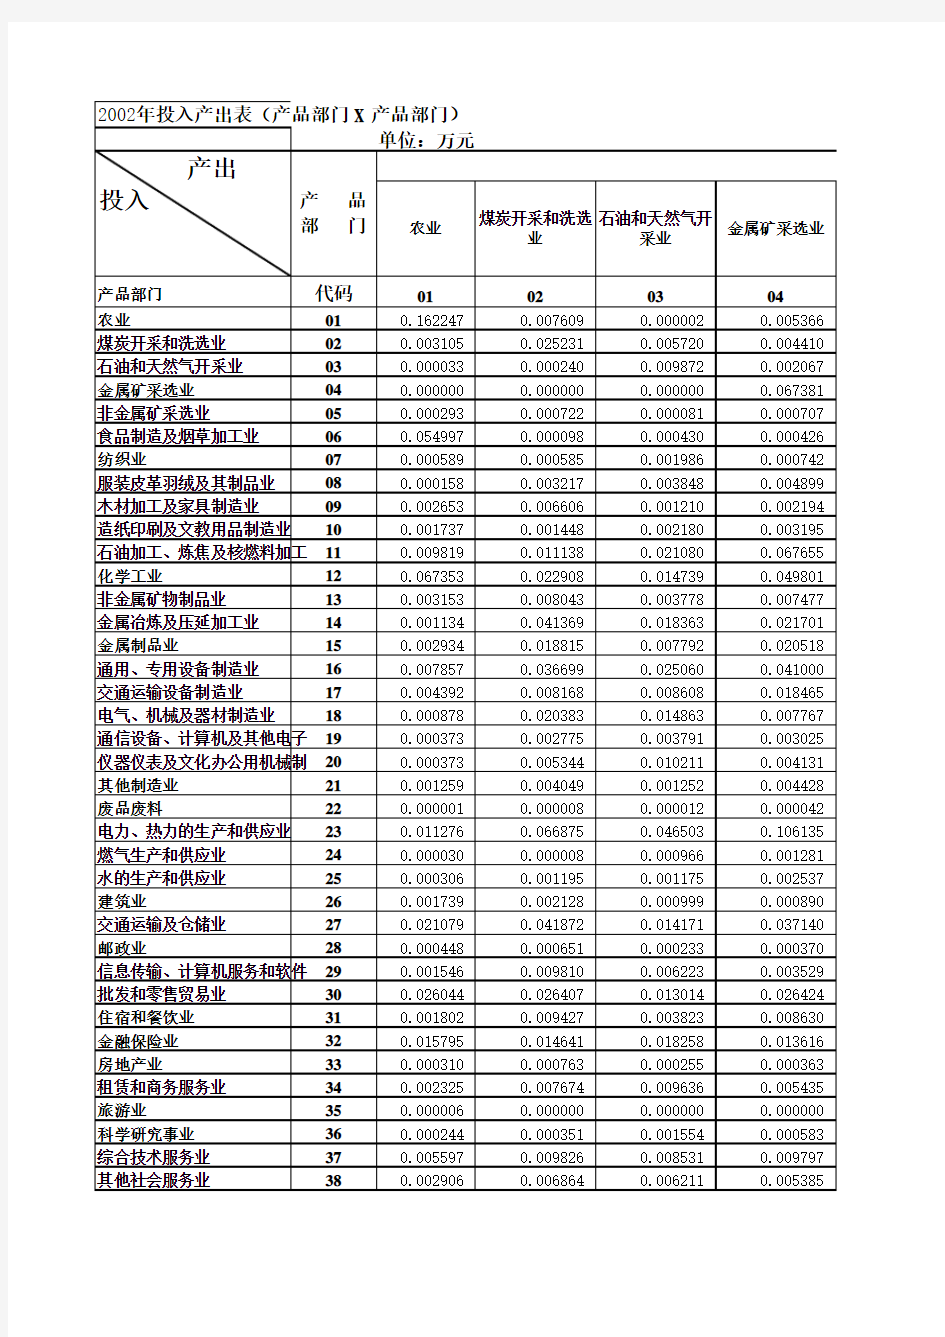 2002中国投入产出表介绍